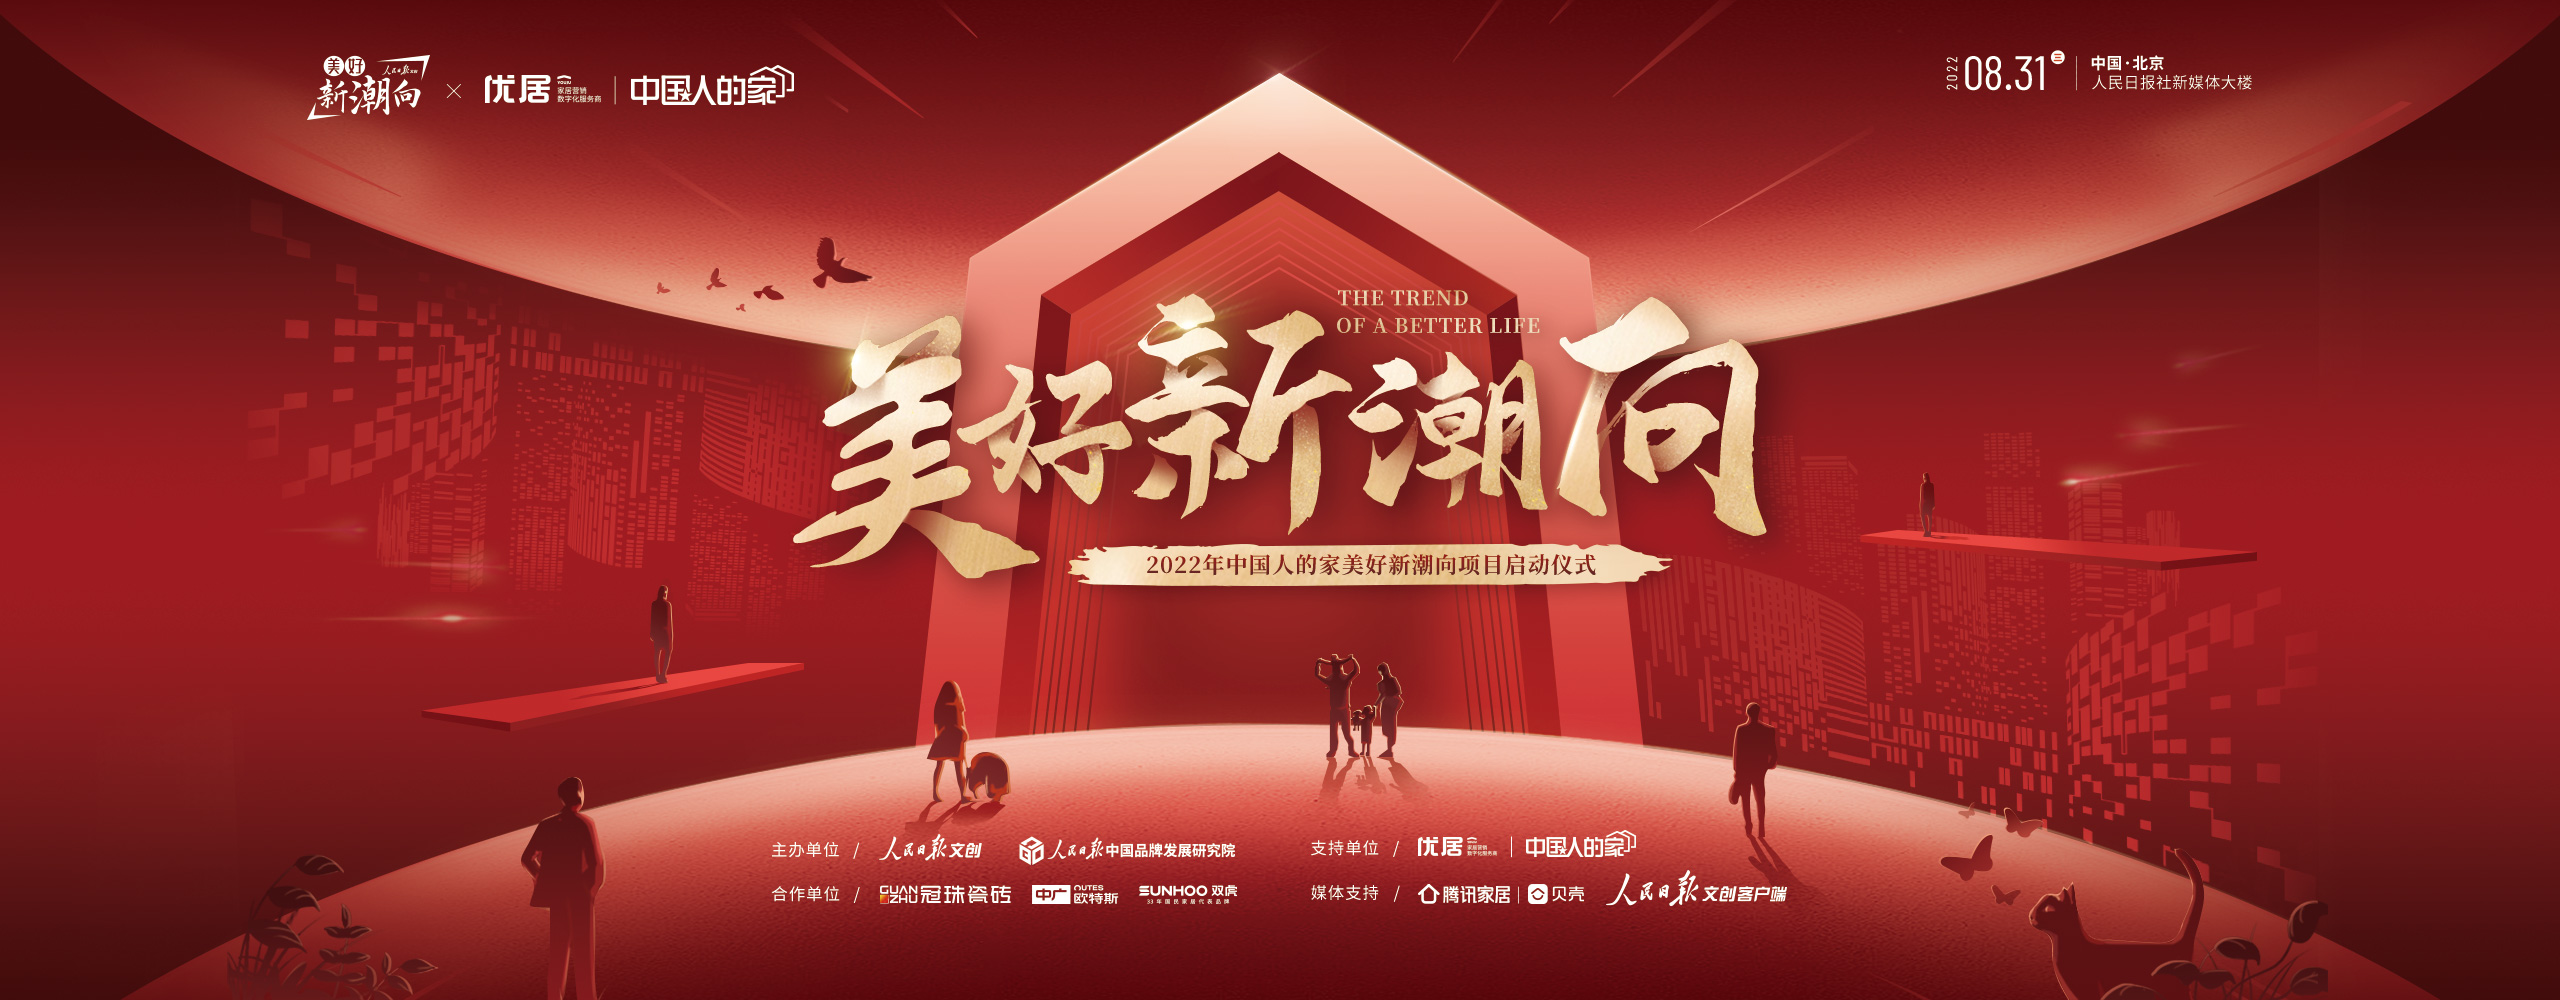 美好新潮向項目發布會暨中國人的家系列主題活動啟動儀式